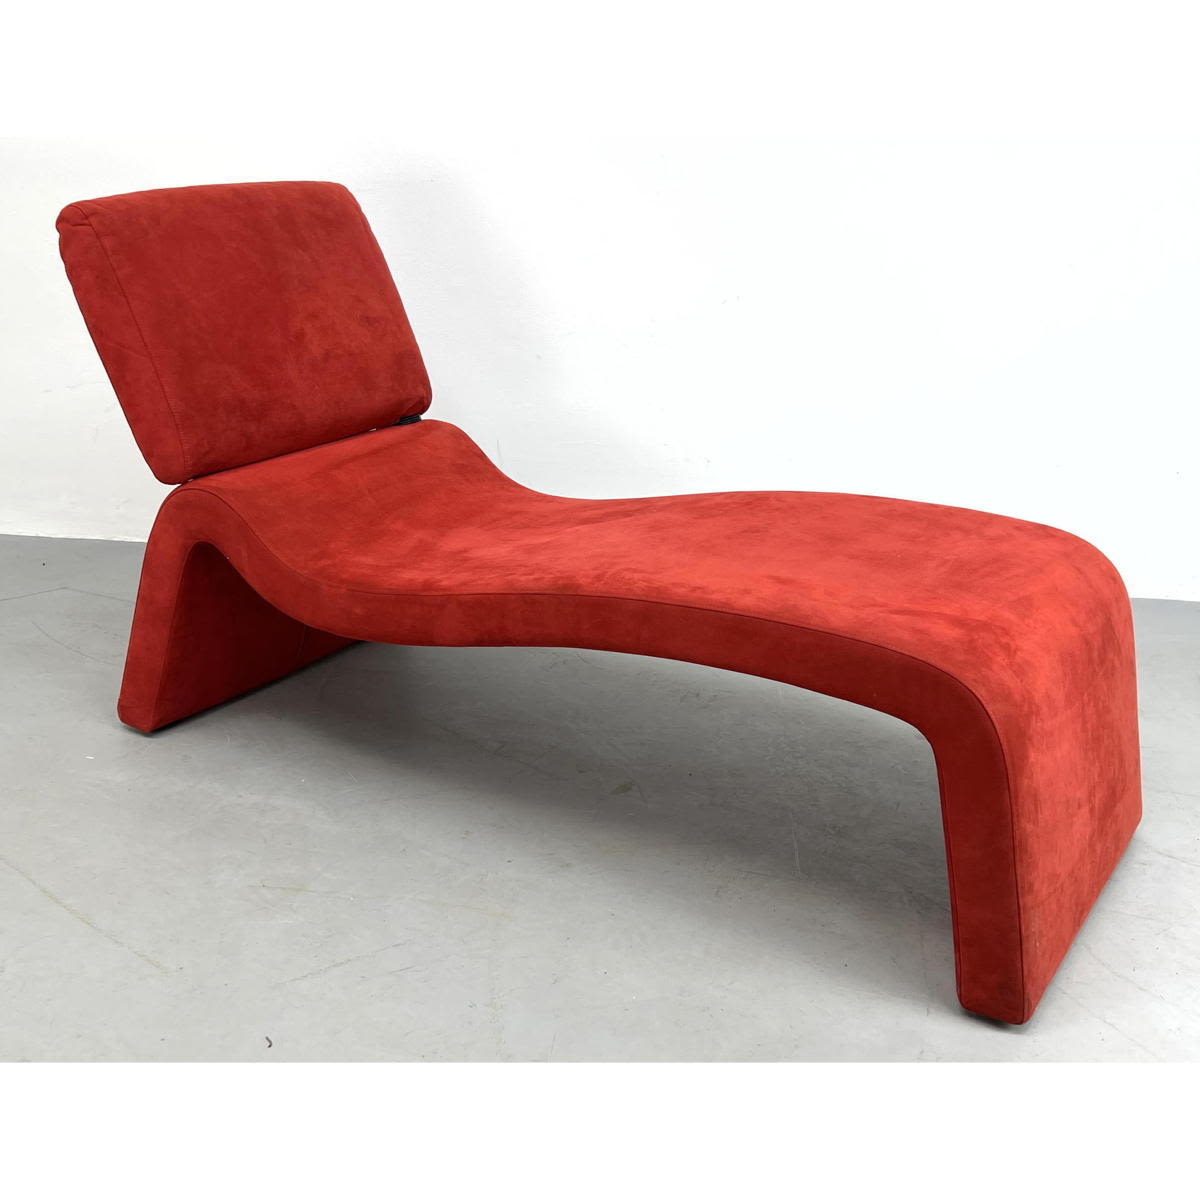 Post Modern Red Velvet Chaise 3acb04